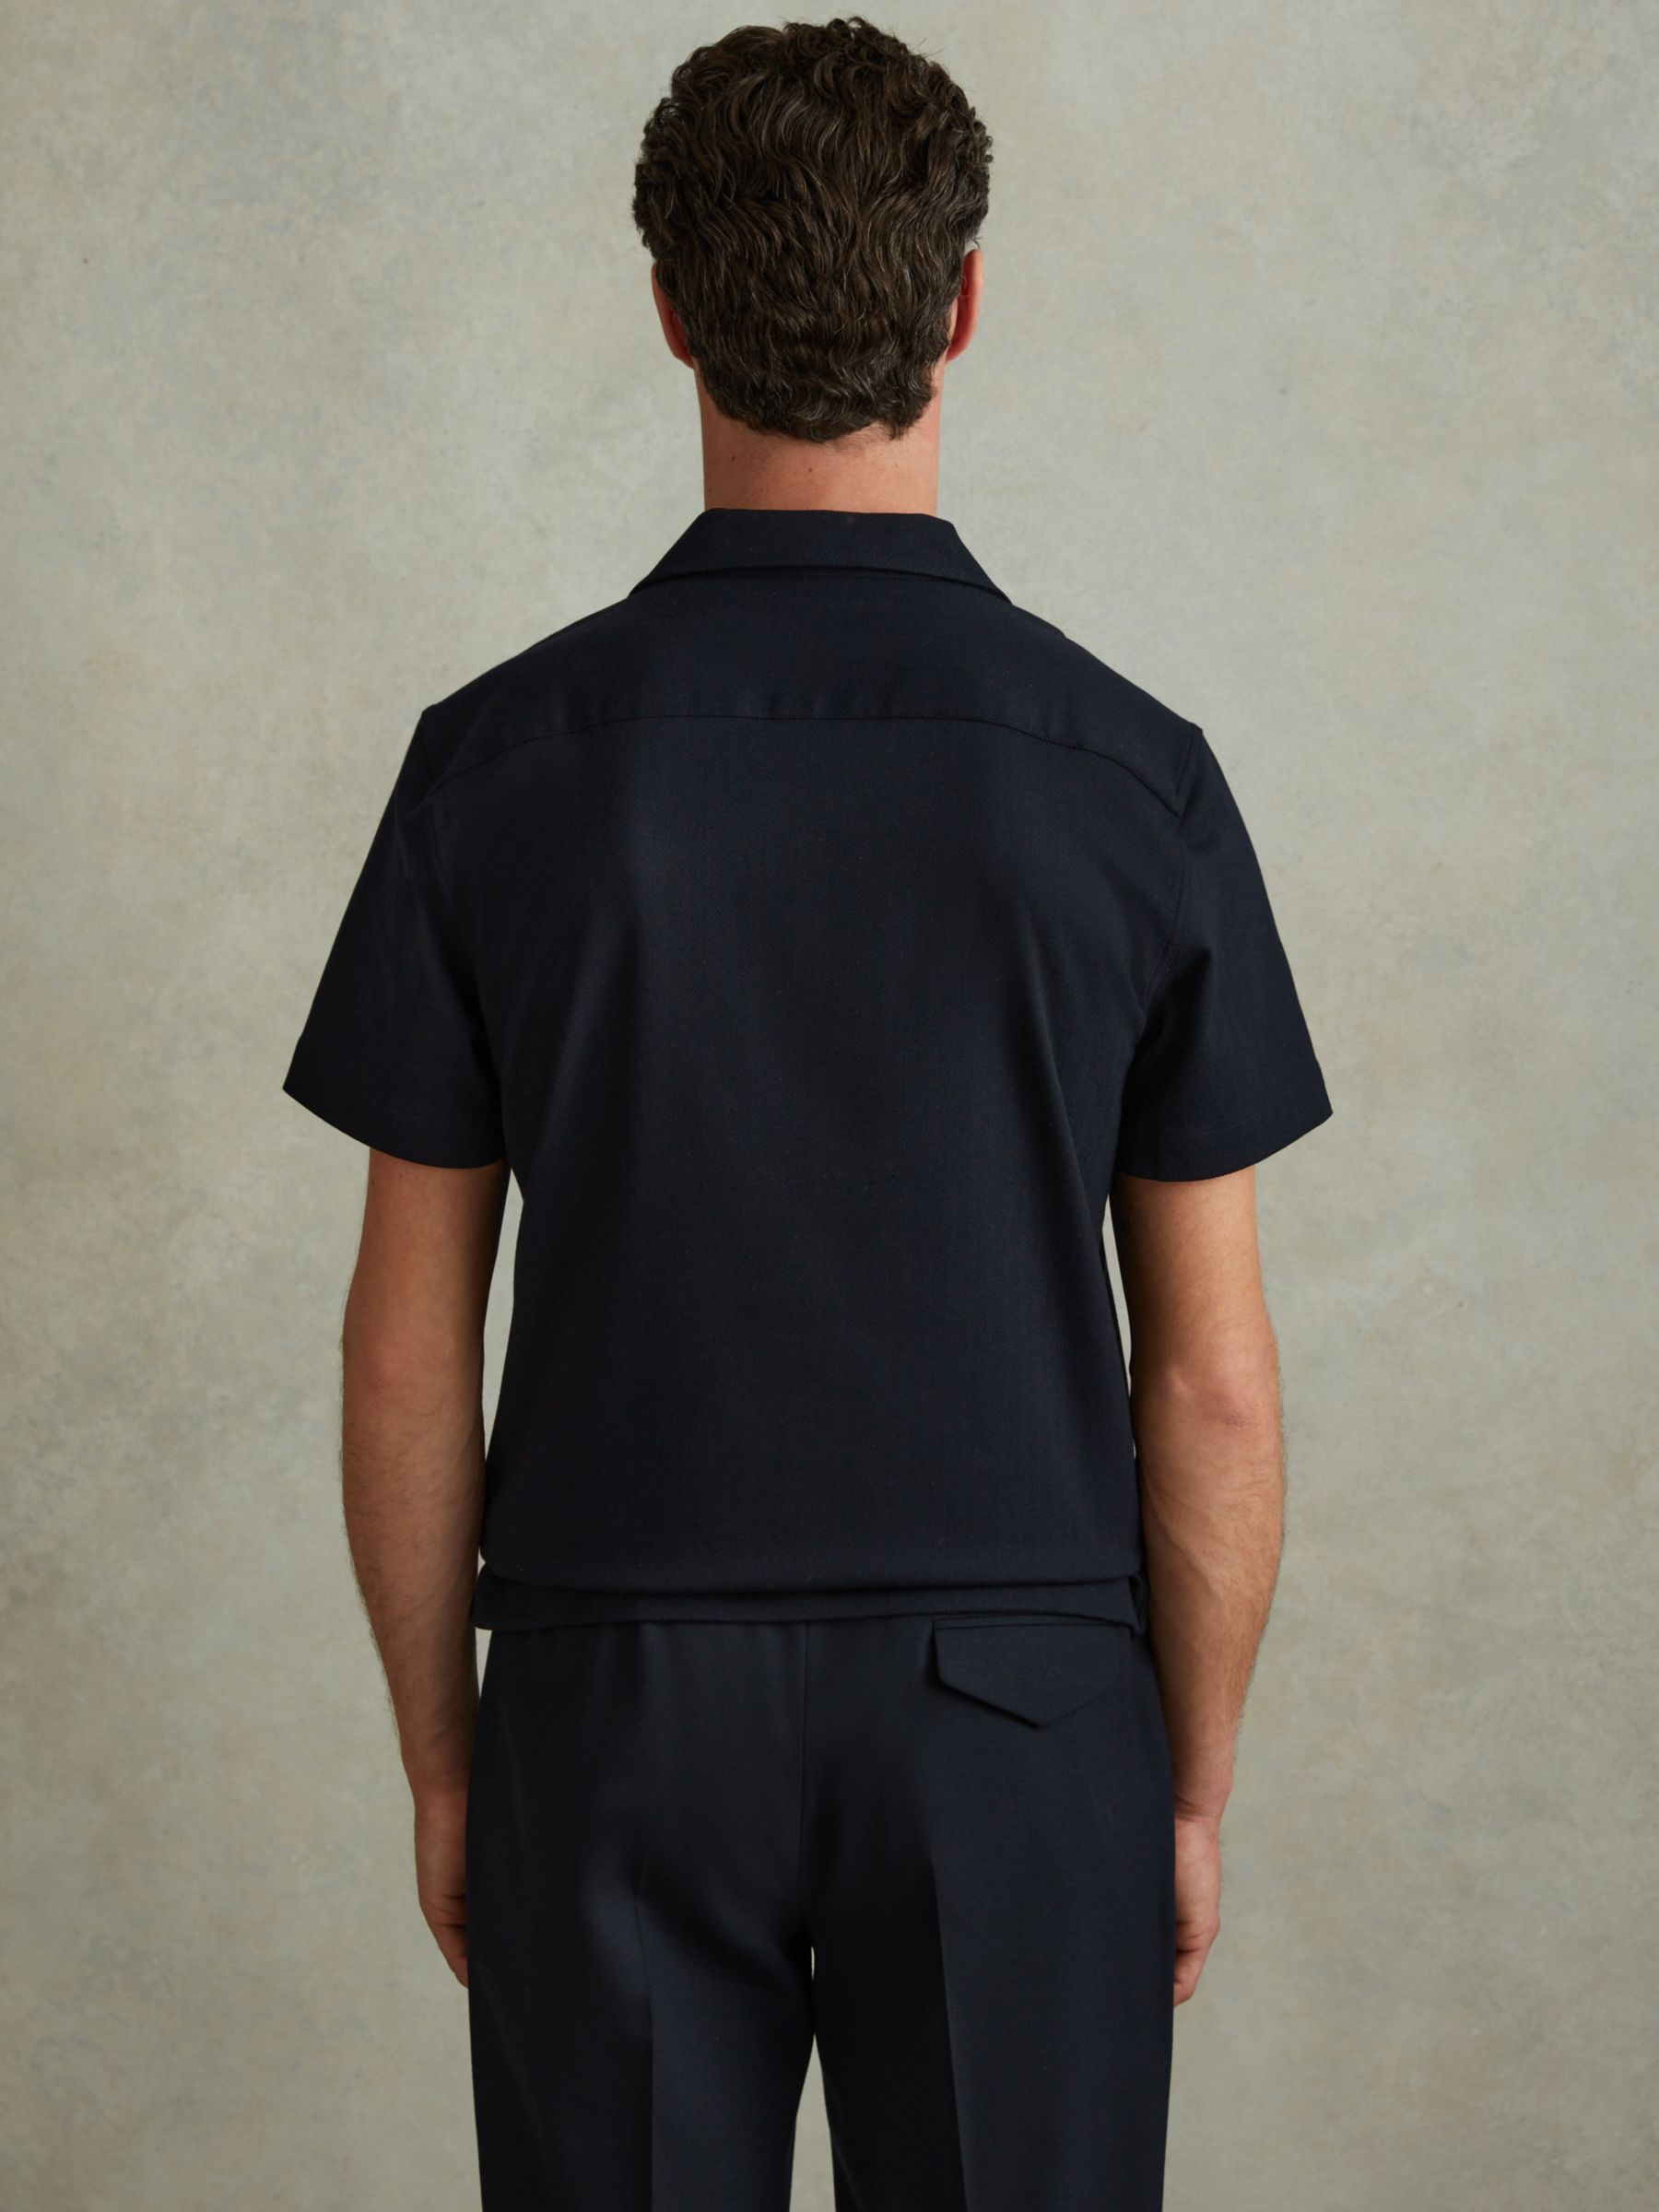 Reiss Nitus Herringbone Short Sleeve Shirt, Navy, XS